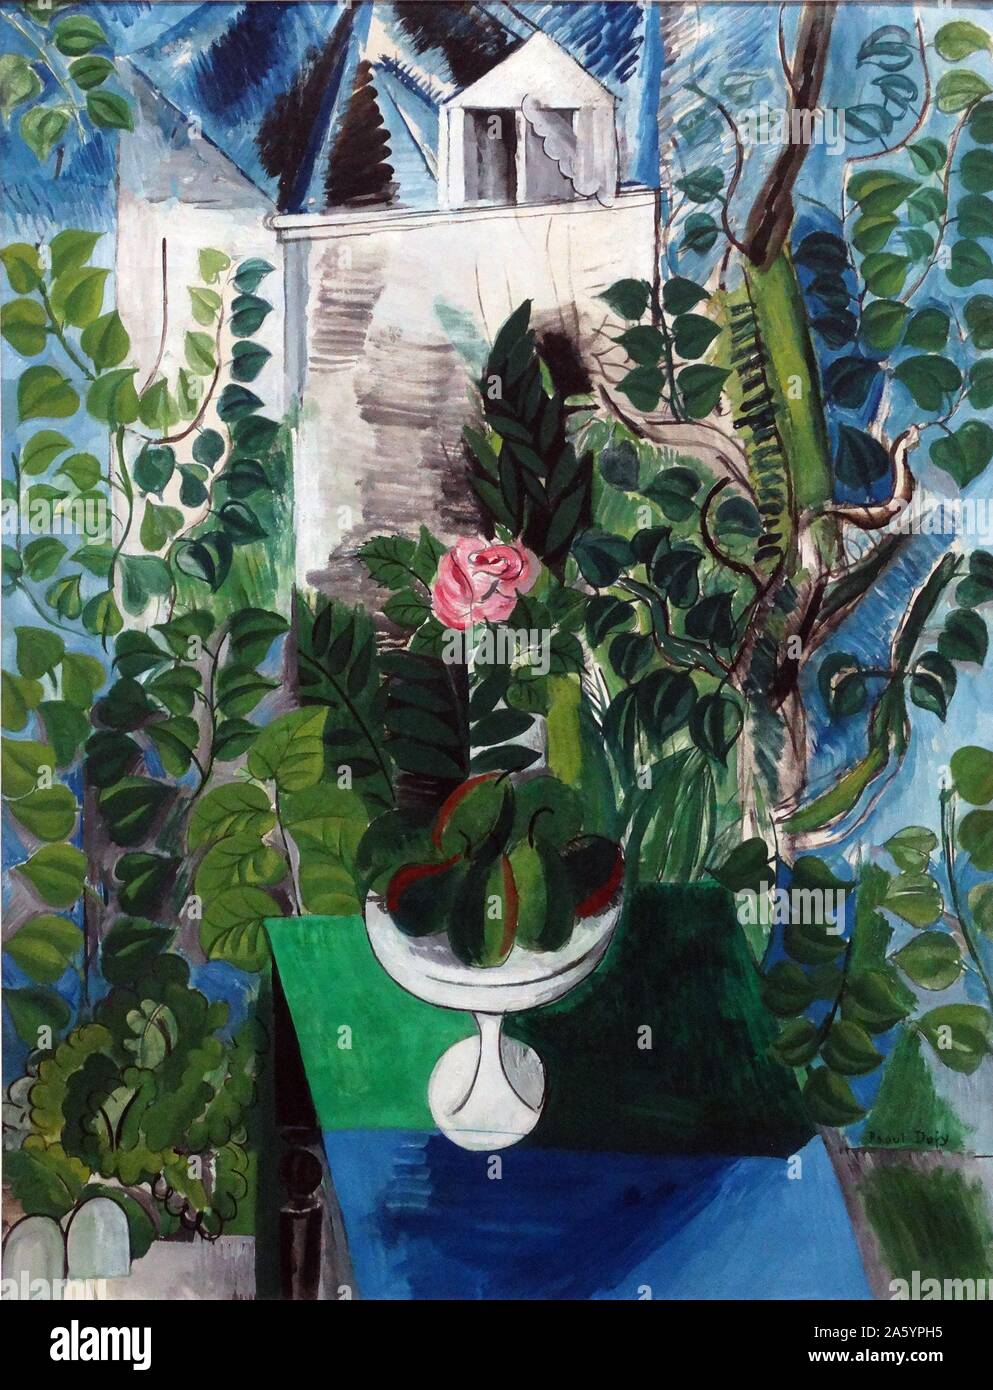 Maison et Jardin von Raoul Dufy (1877-1953). Öl auf Leinwand, 1915. Dufy war ein französischer fauvistischen Maler, der einen farbenfrohen, dekorativen Stil entwickelt, der schnell in Mode kam. Stockfoto